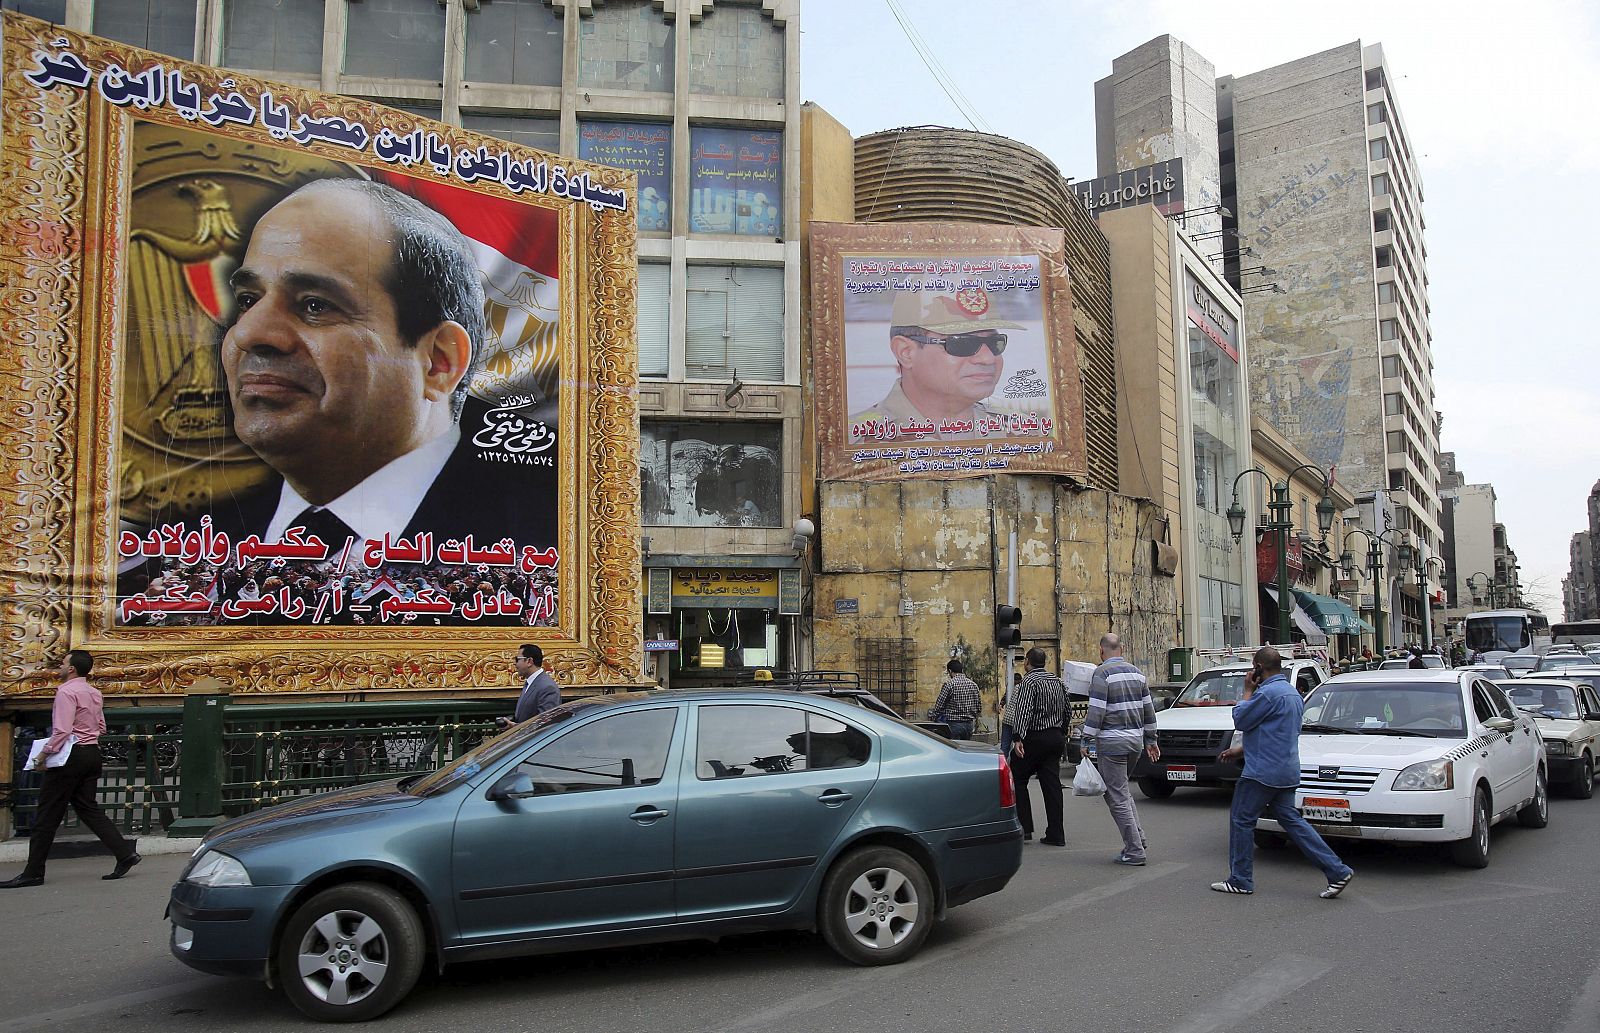 AL SISI PRESENTA OFICIALMENTE SU CANDIDATURA A LAS PRESIDENCIALES EGIPCIAS